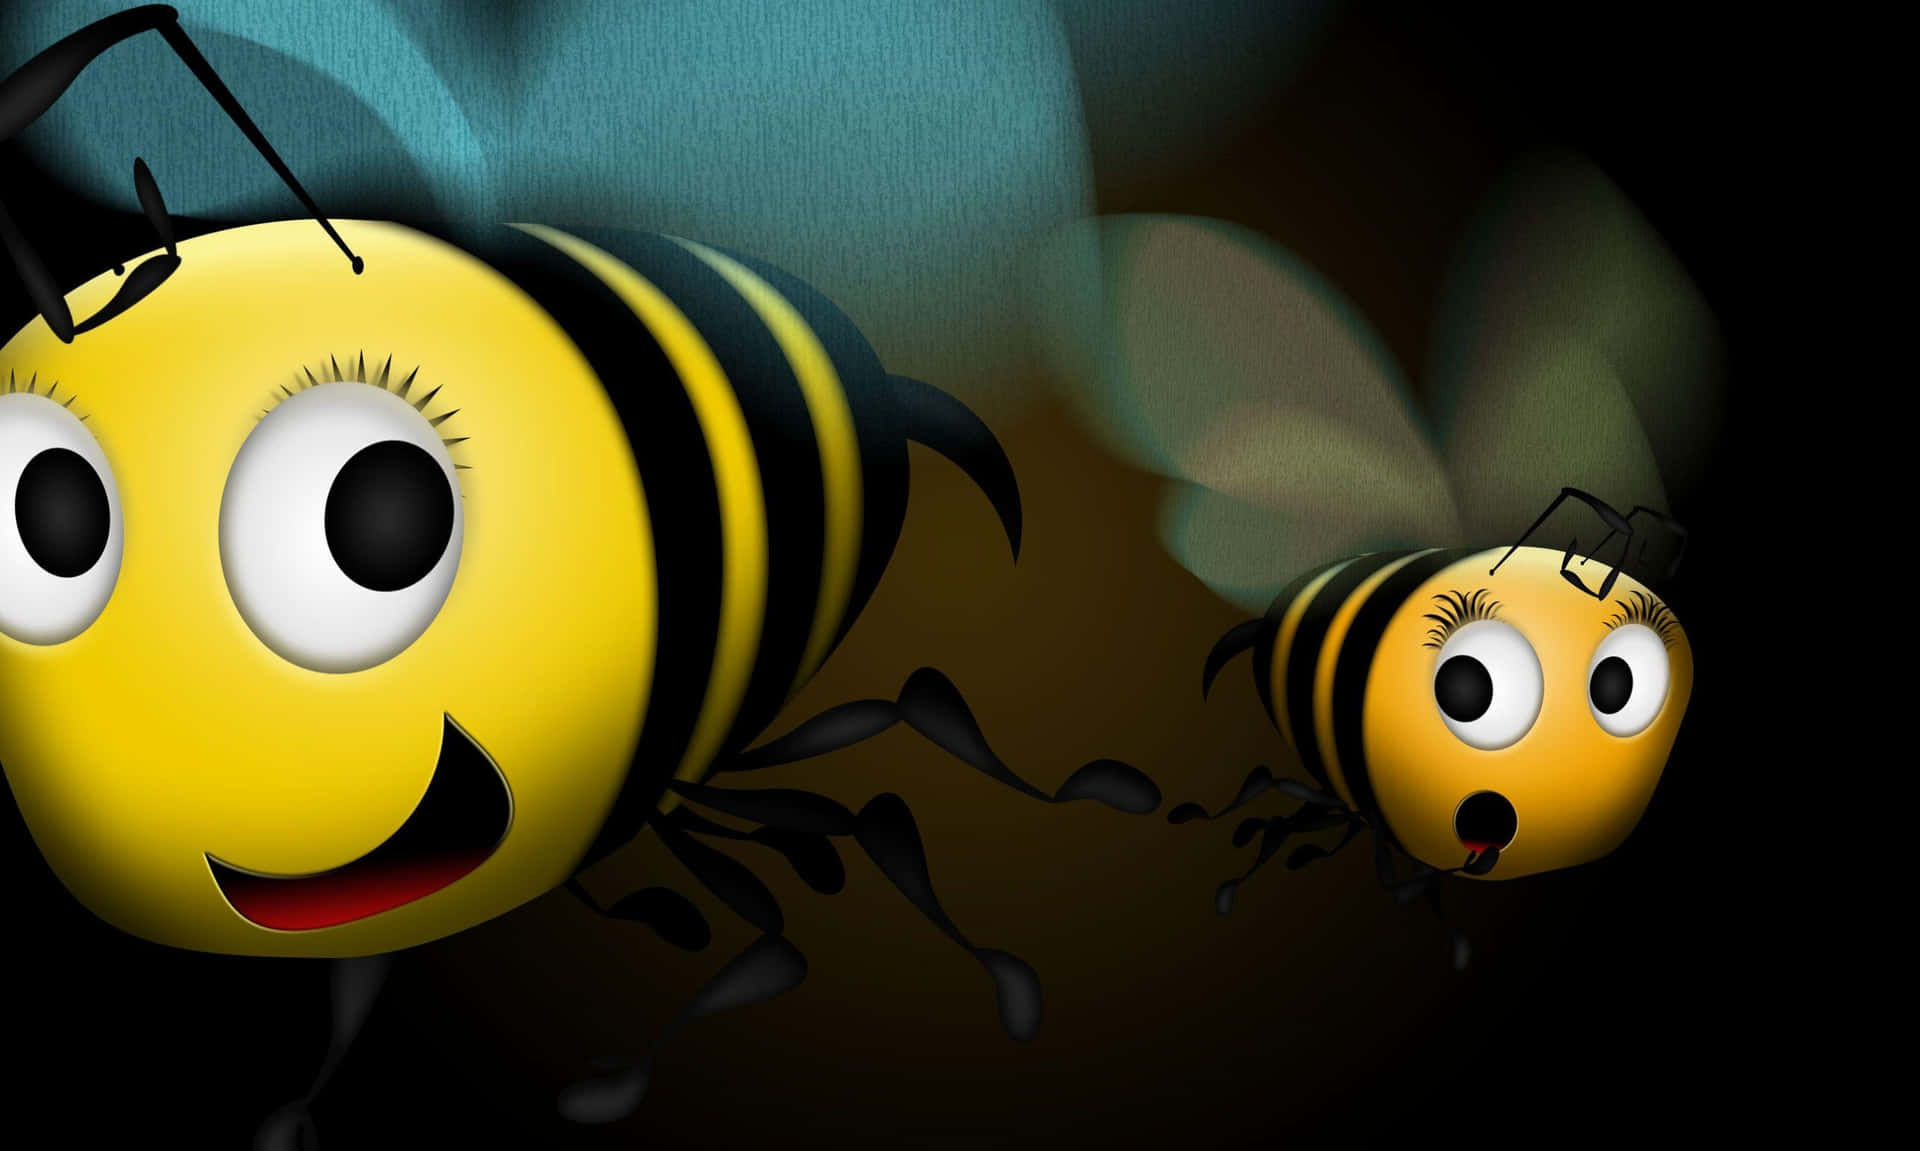 Süße Bienenbilder